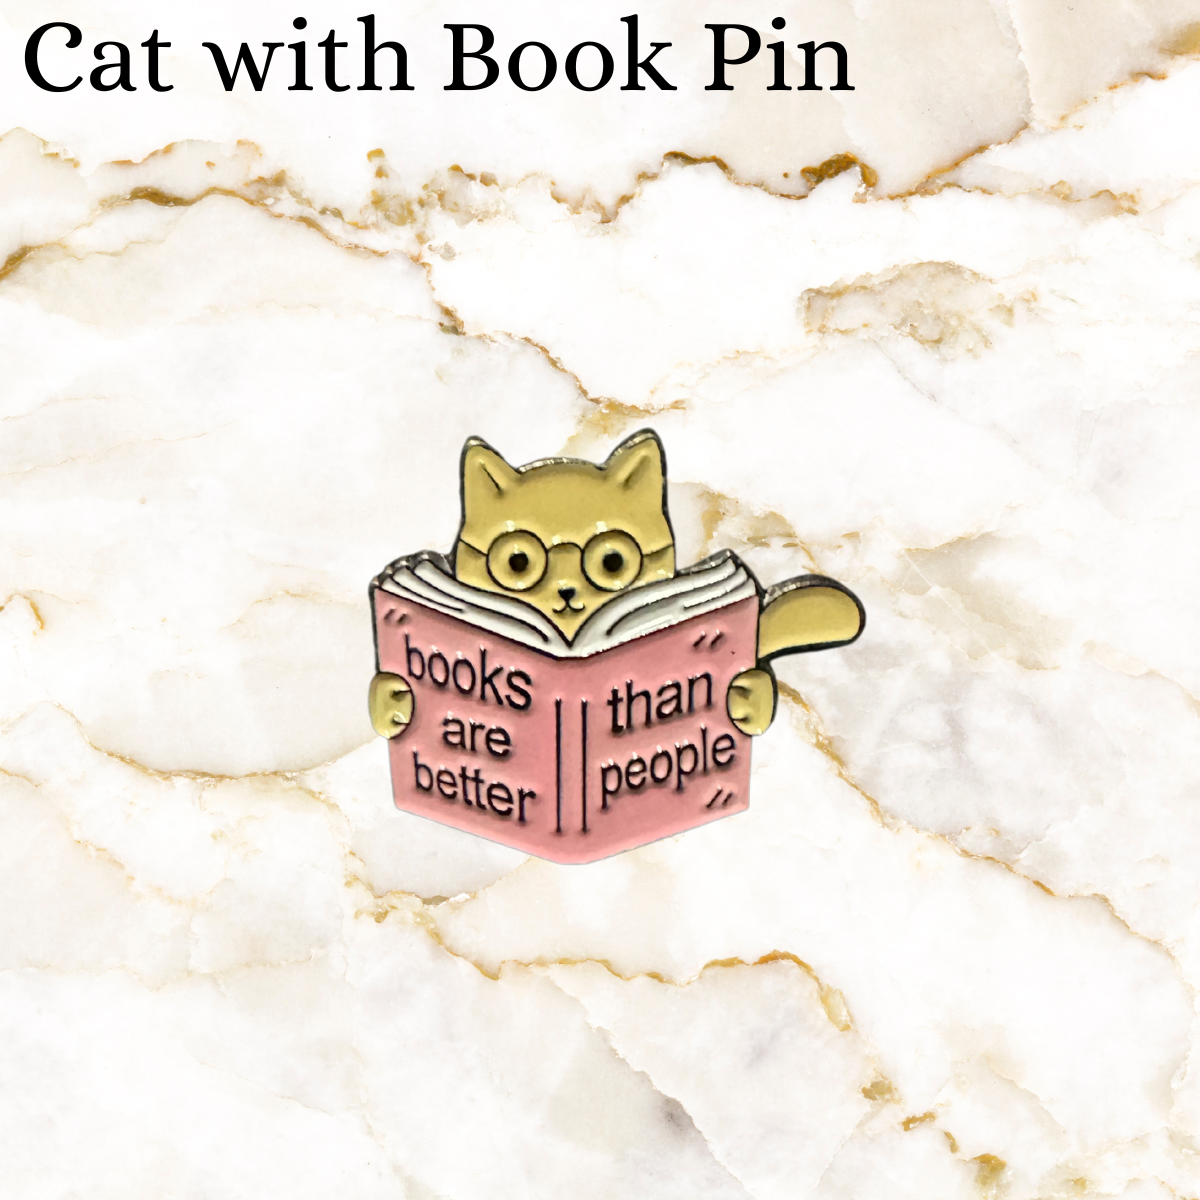 Bookish and Fun Pins